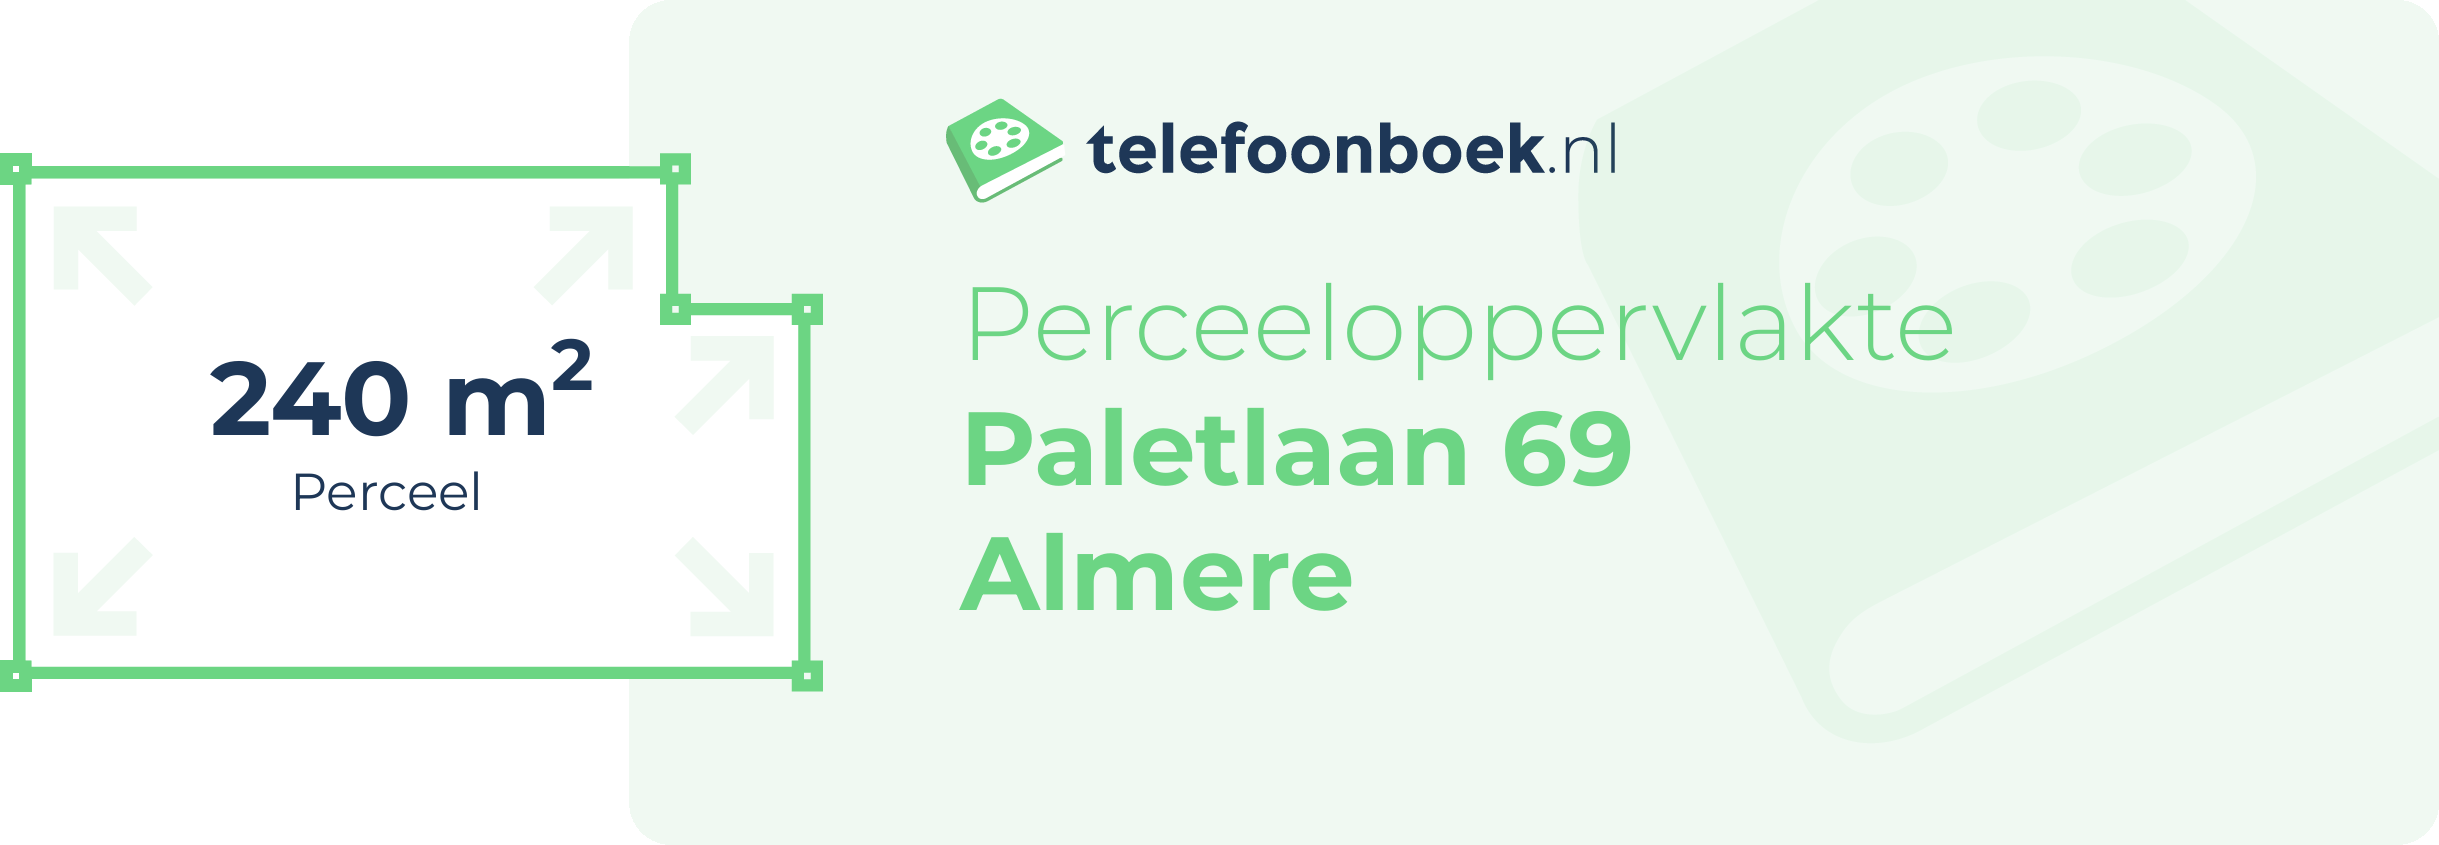 Perceeloppervlakte Paletlaan 69 Almere